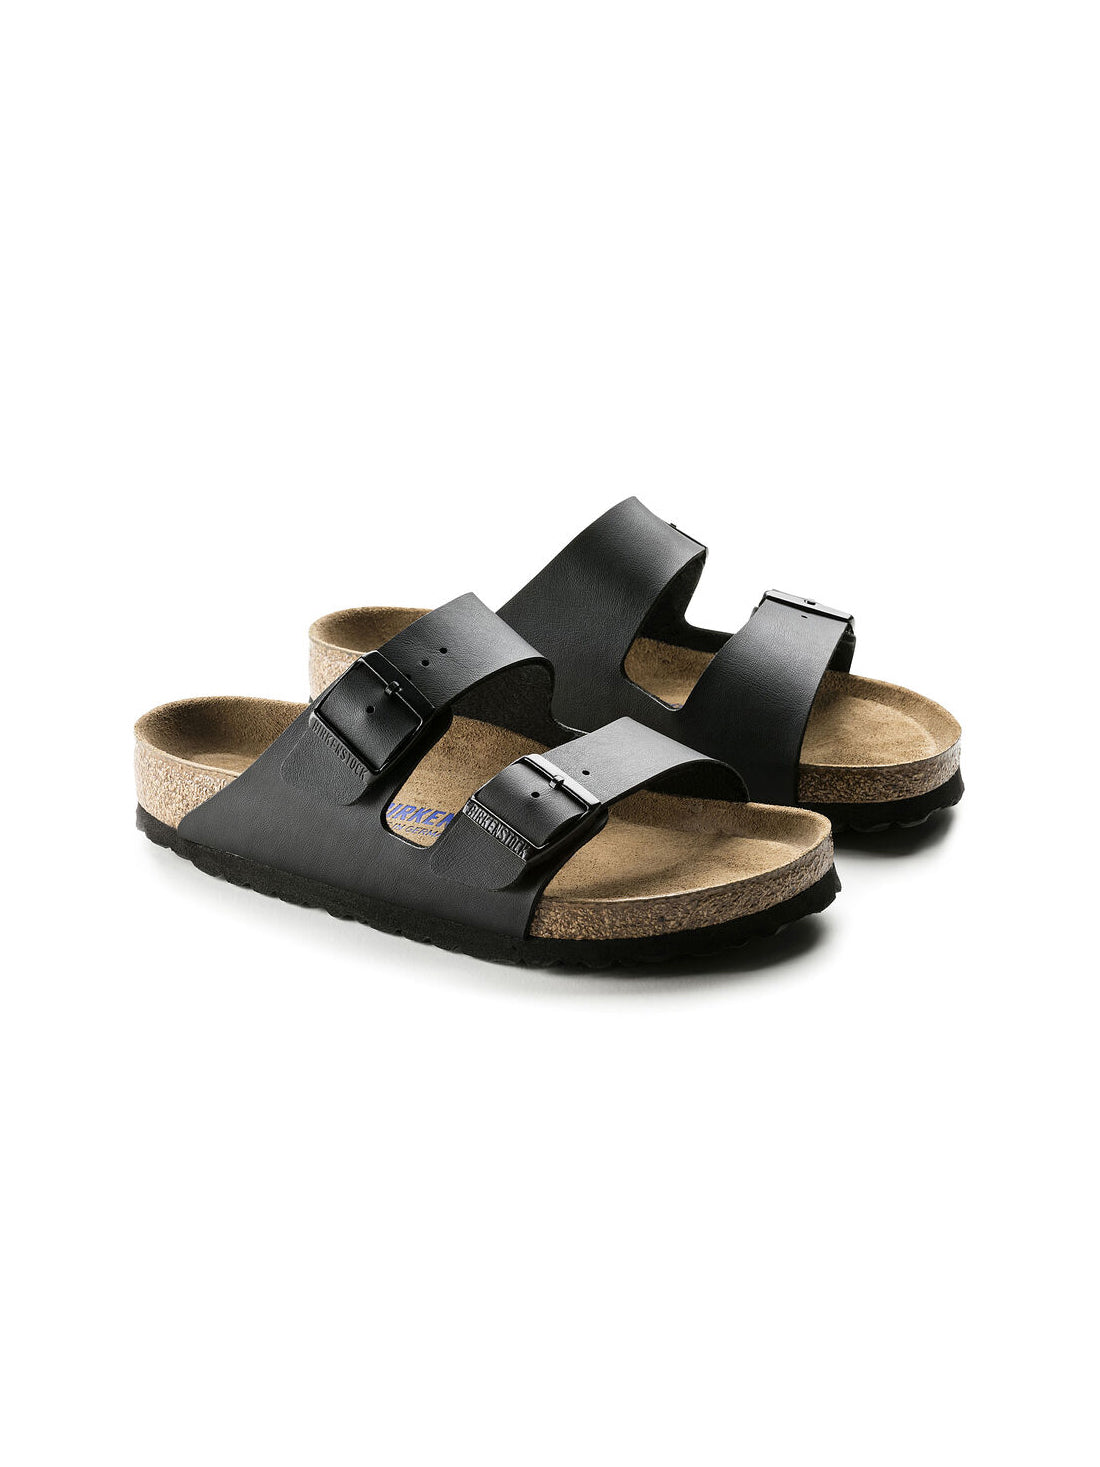 birkenstock arizona soft footbed sandal in birko-flor black narrow